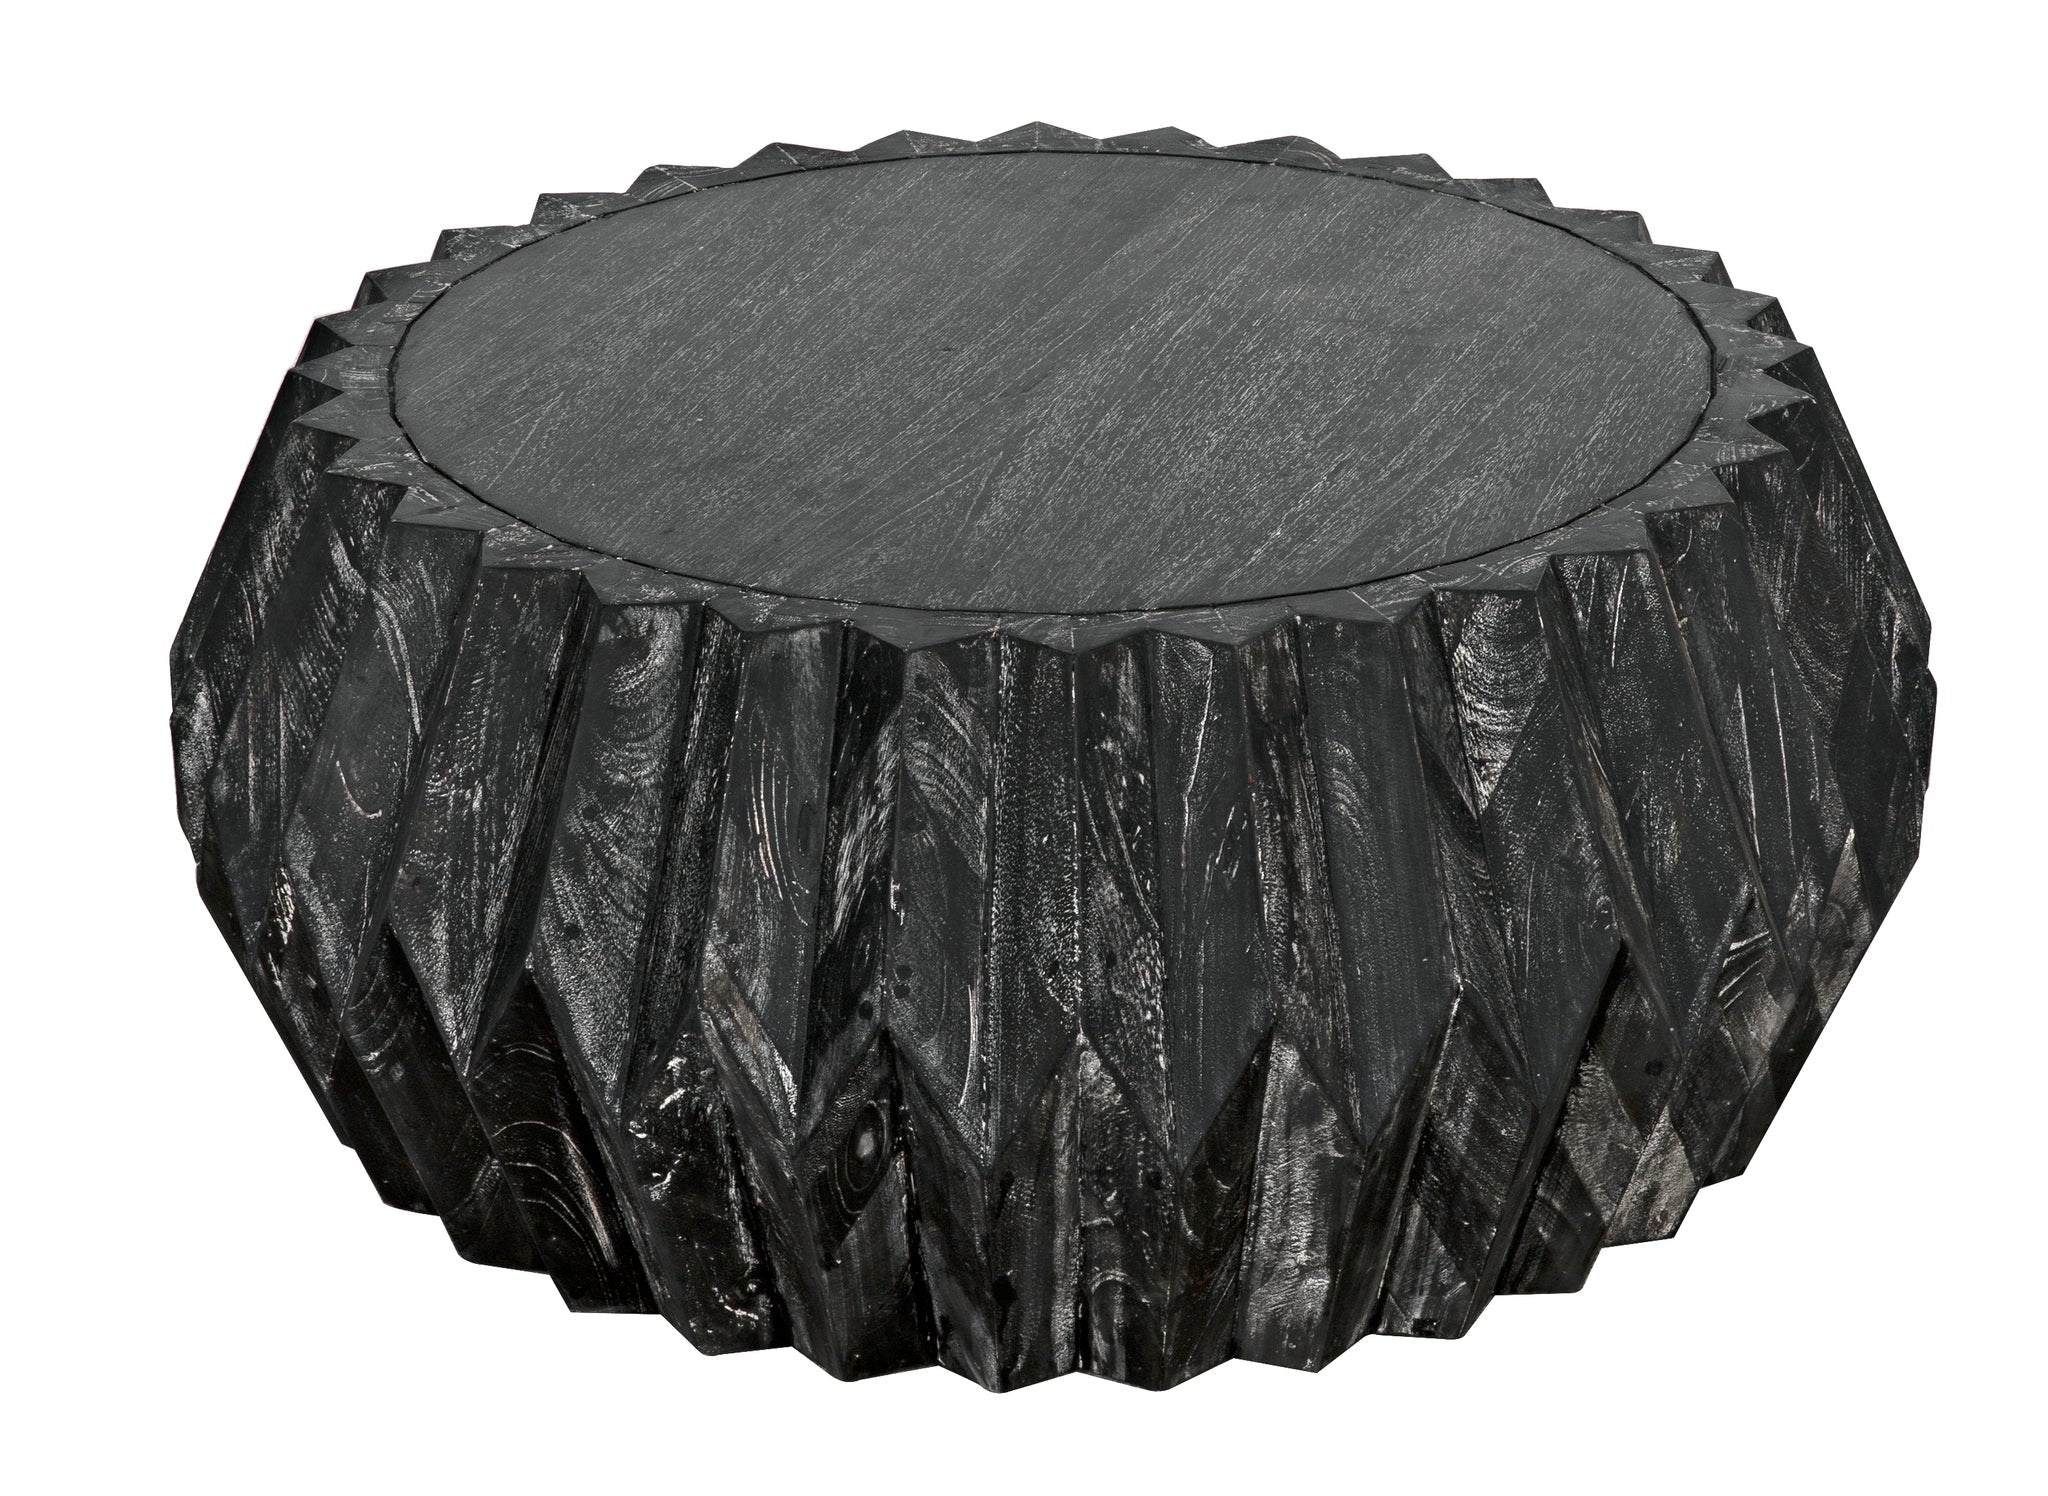 Tamela Cocktail Table, Cinder Black - Furniture - Tipplergoods